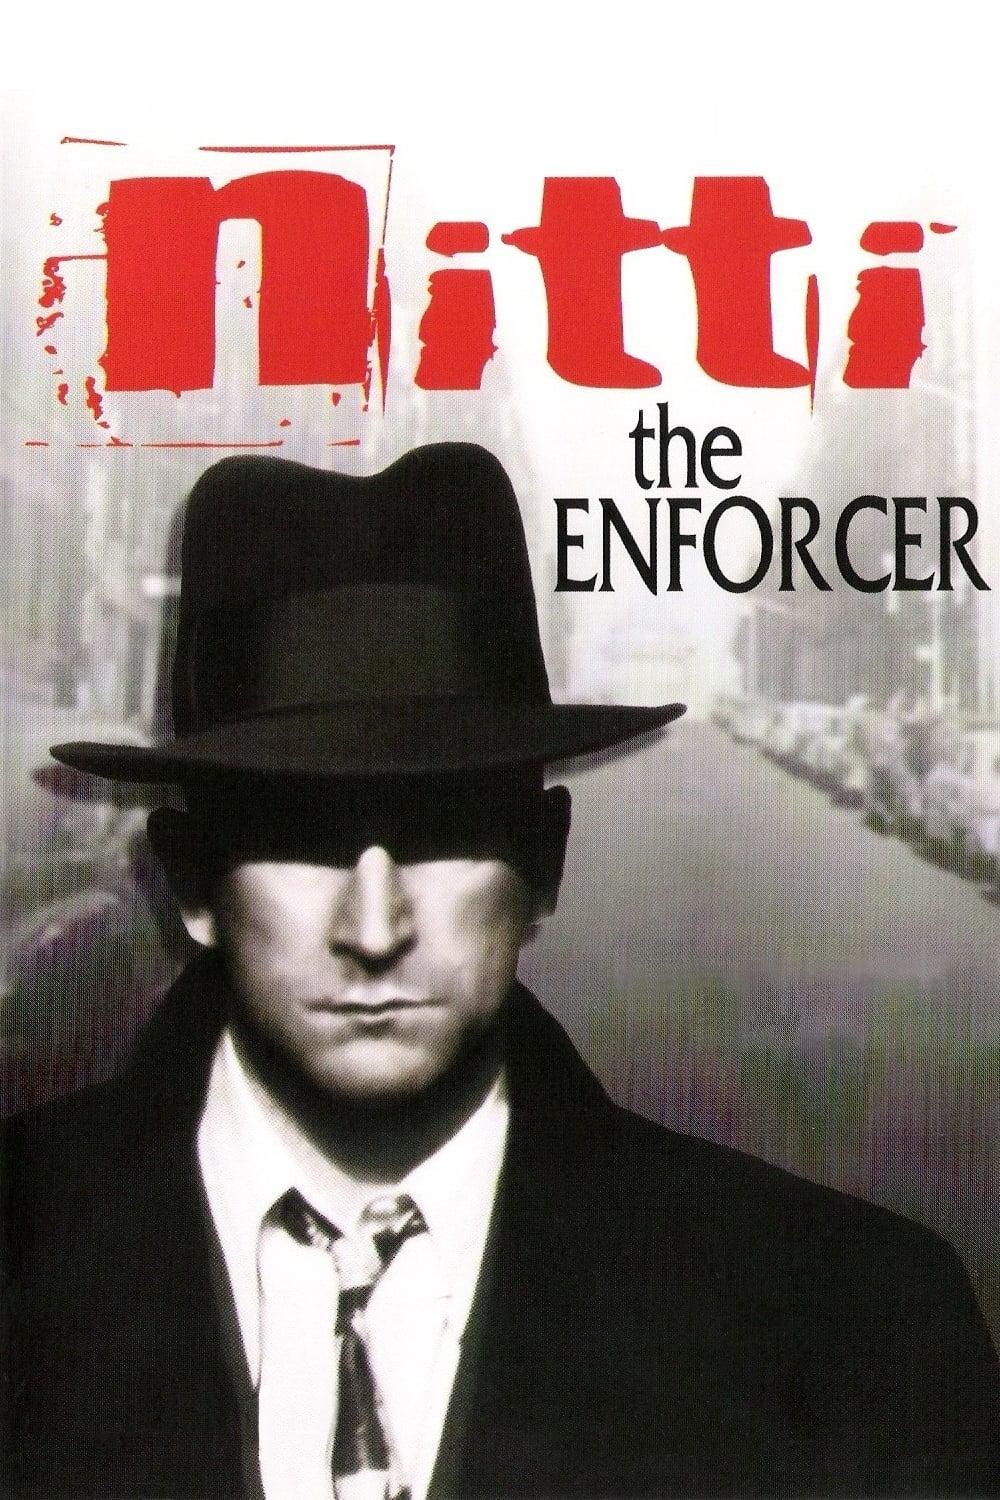 Frank Nitti: The Enforcer poster